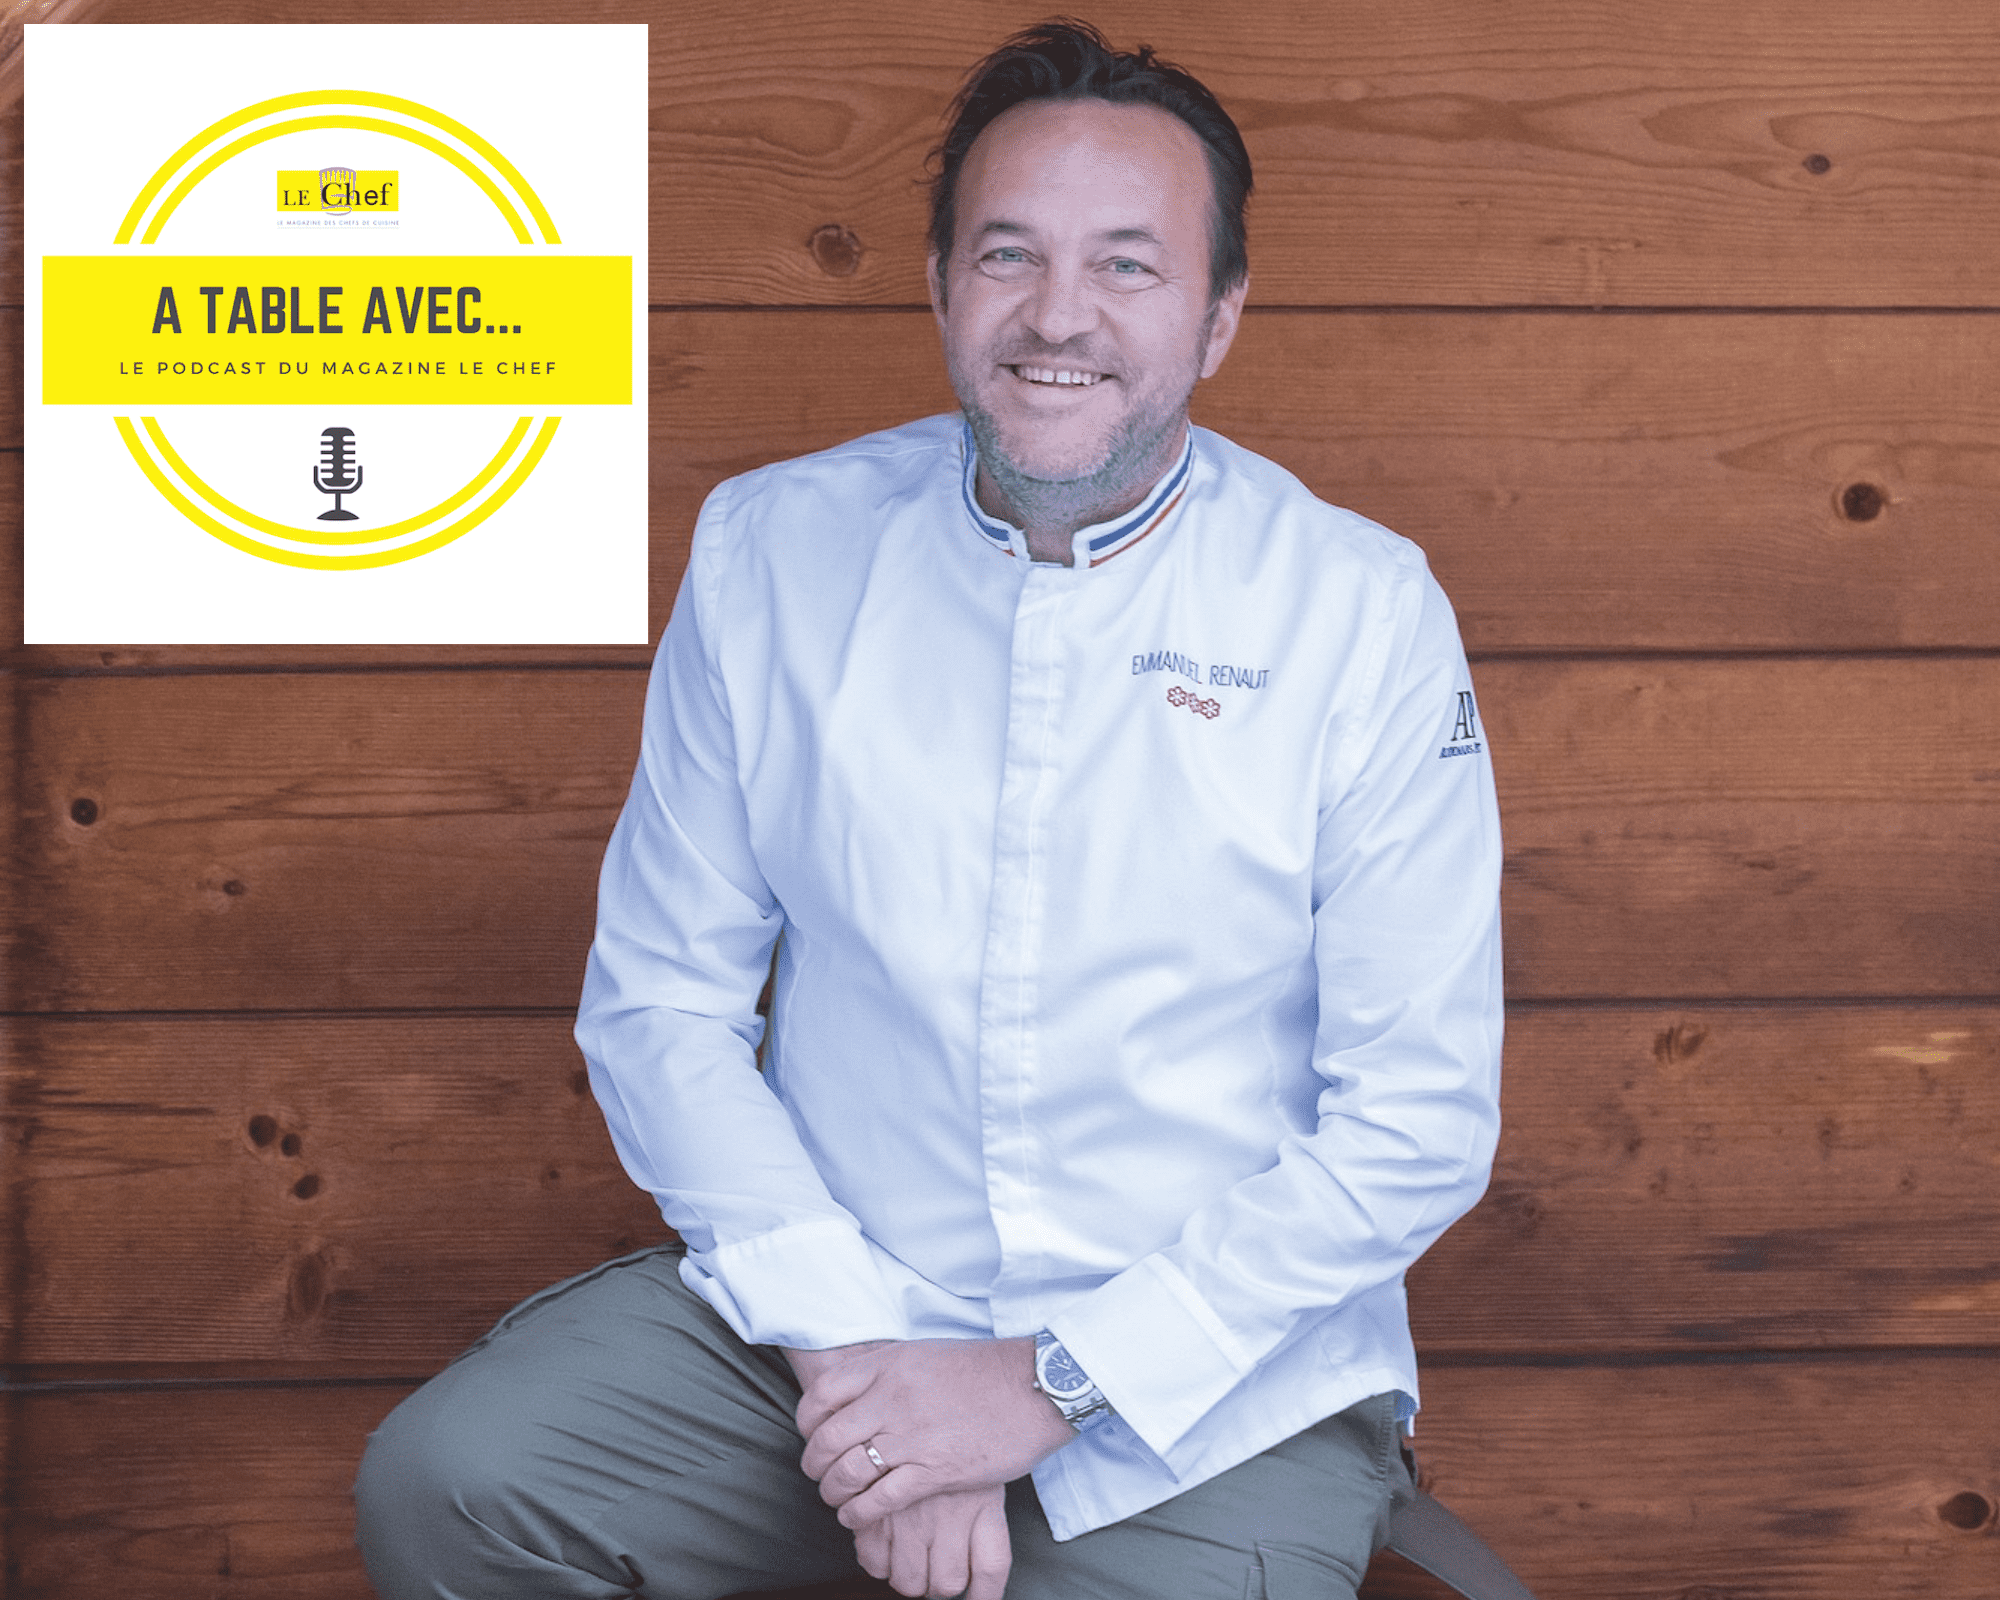 « A Table avec… Emmanuel Renaut », nouveau podcast du magazine Le Chef